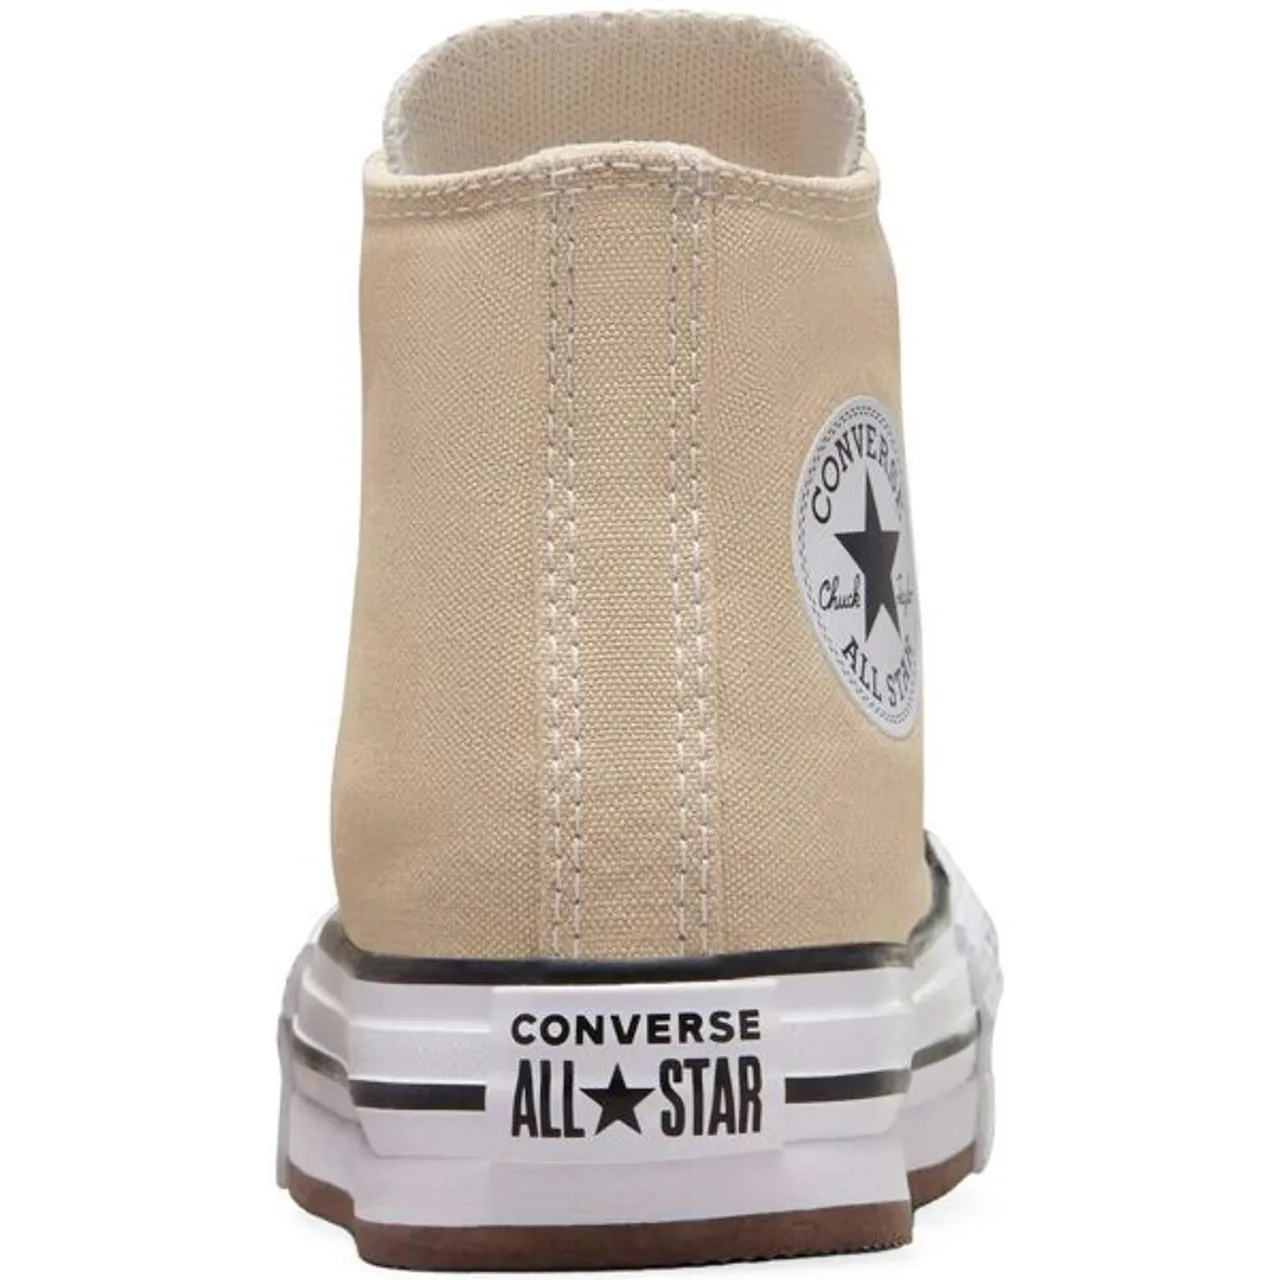 Sneaker CONVERSE "CHUCK TAYLOR ALL STAR EVA LIFT" Gr. 29, weiß (white) Schuhe Sneaker